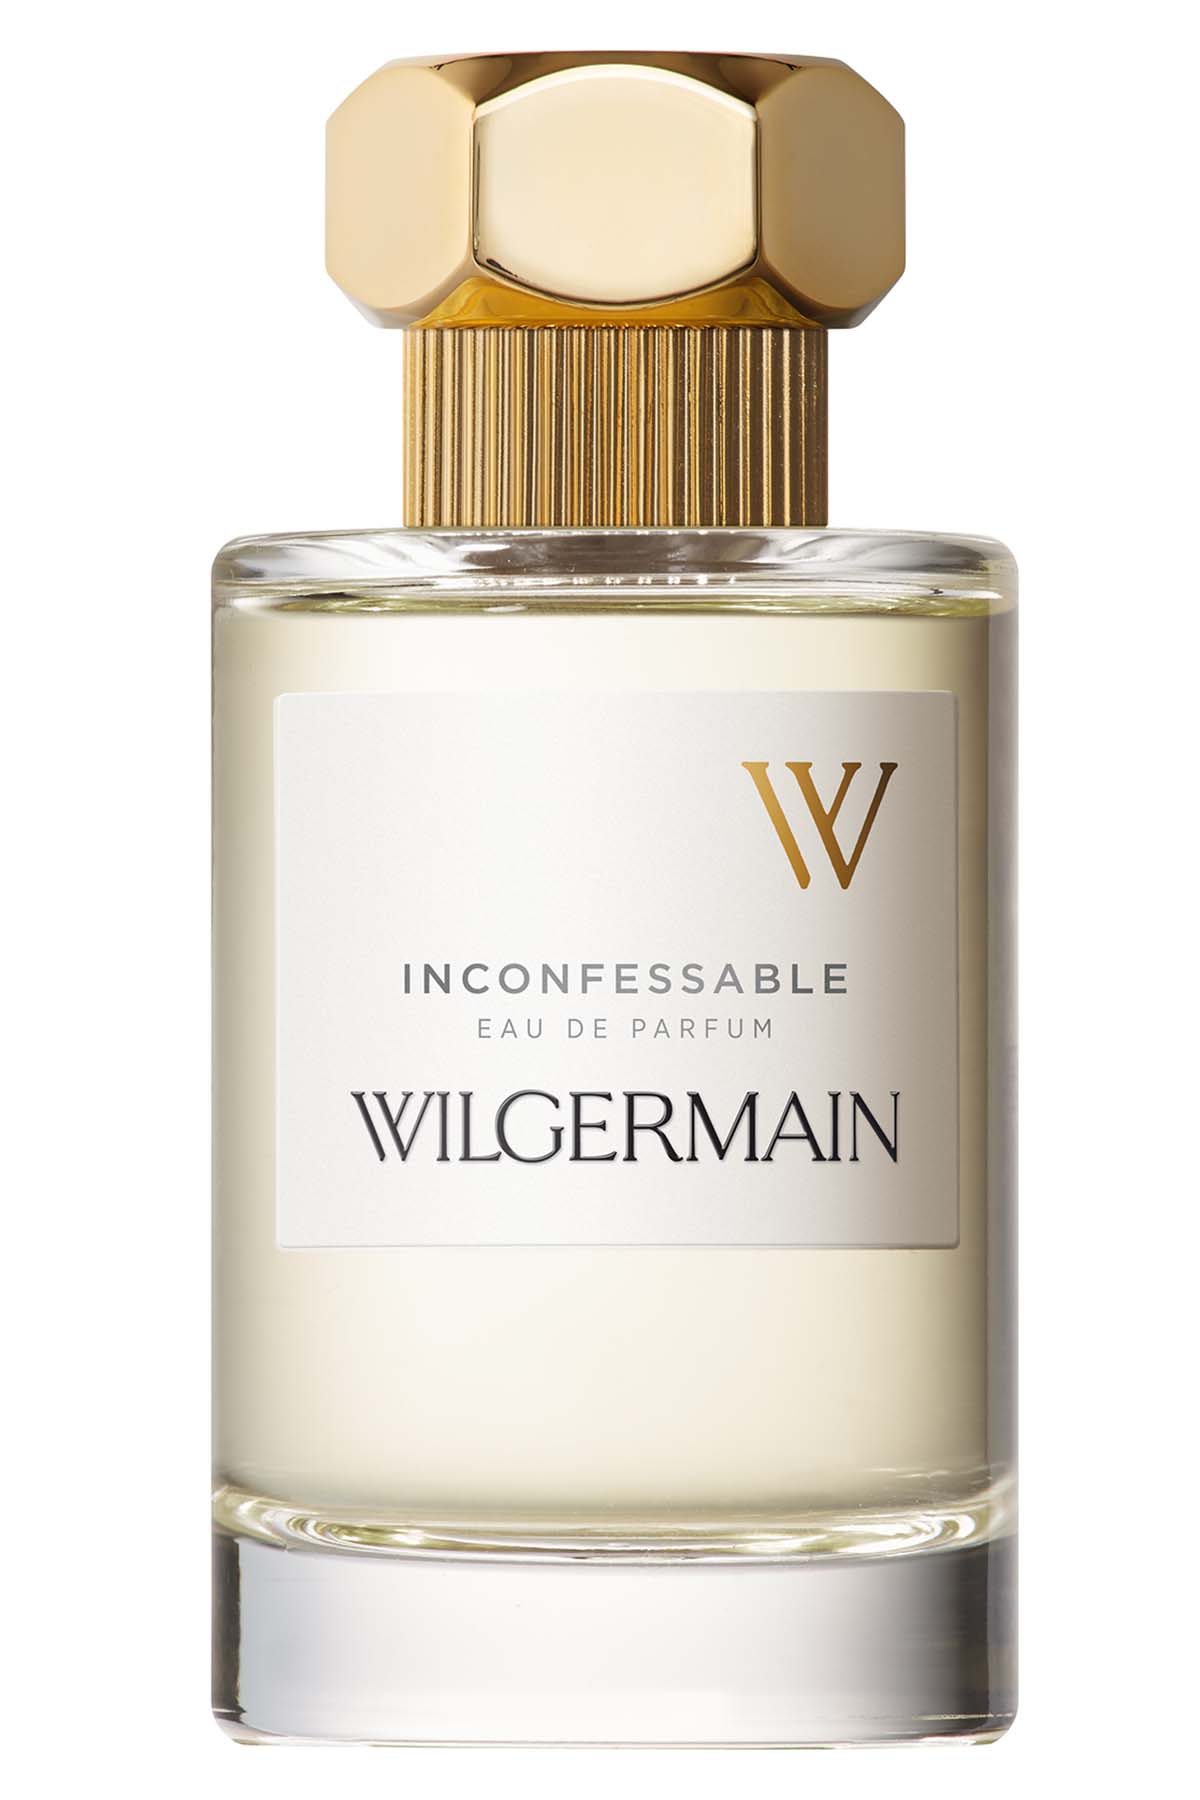 Wilgermain Inconfessable Eau de Parfum